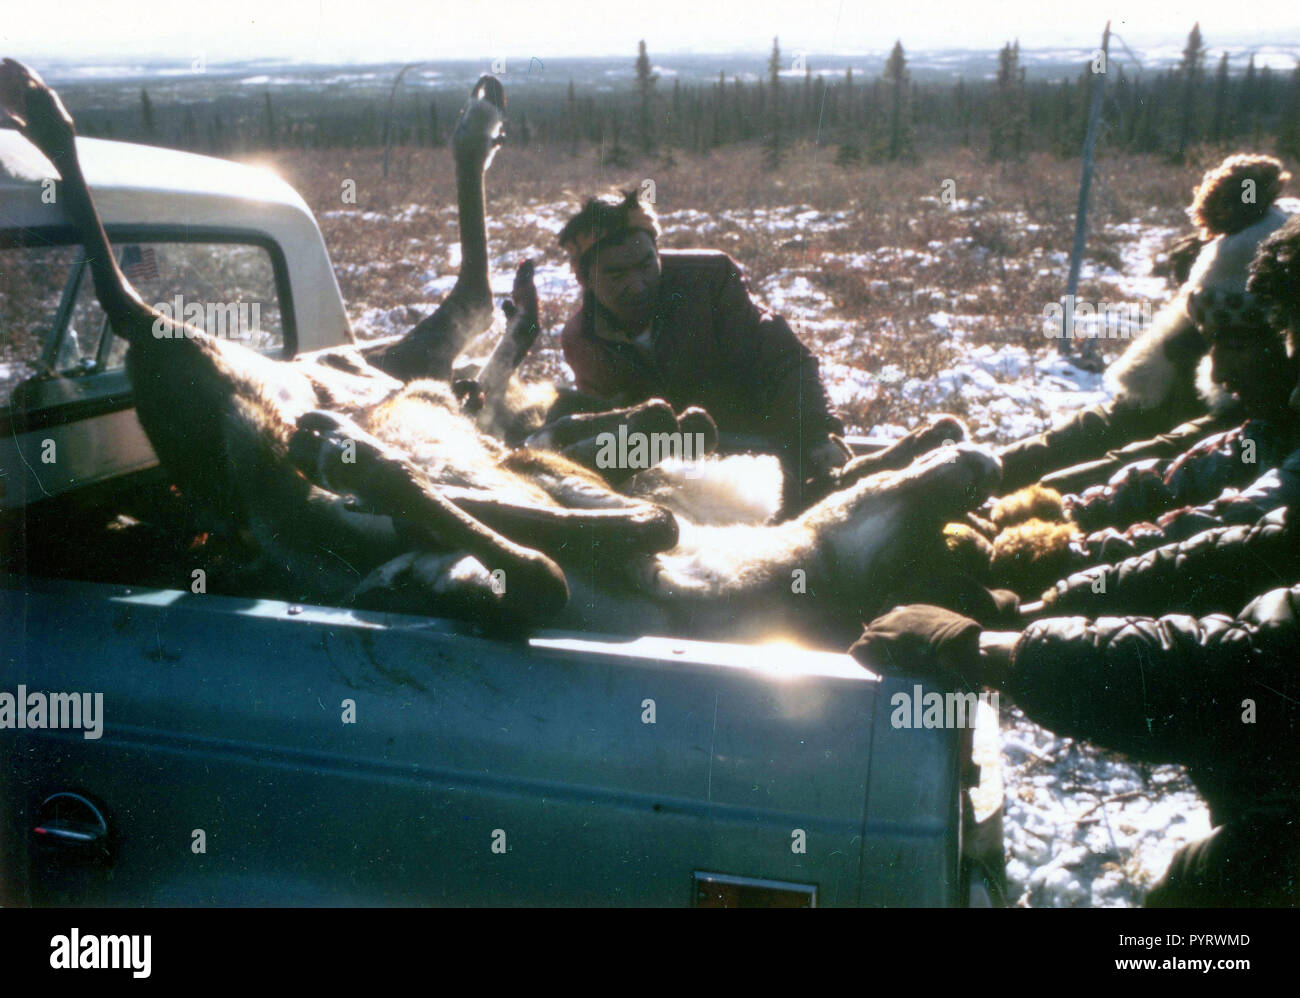 10/7/1972 - Chasseur de caribou, Ambler Alaska area, with dead Caribou Banque D'Images